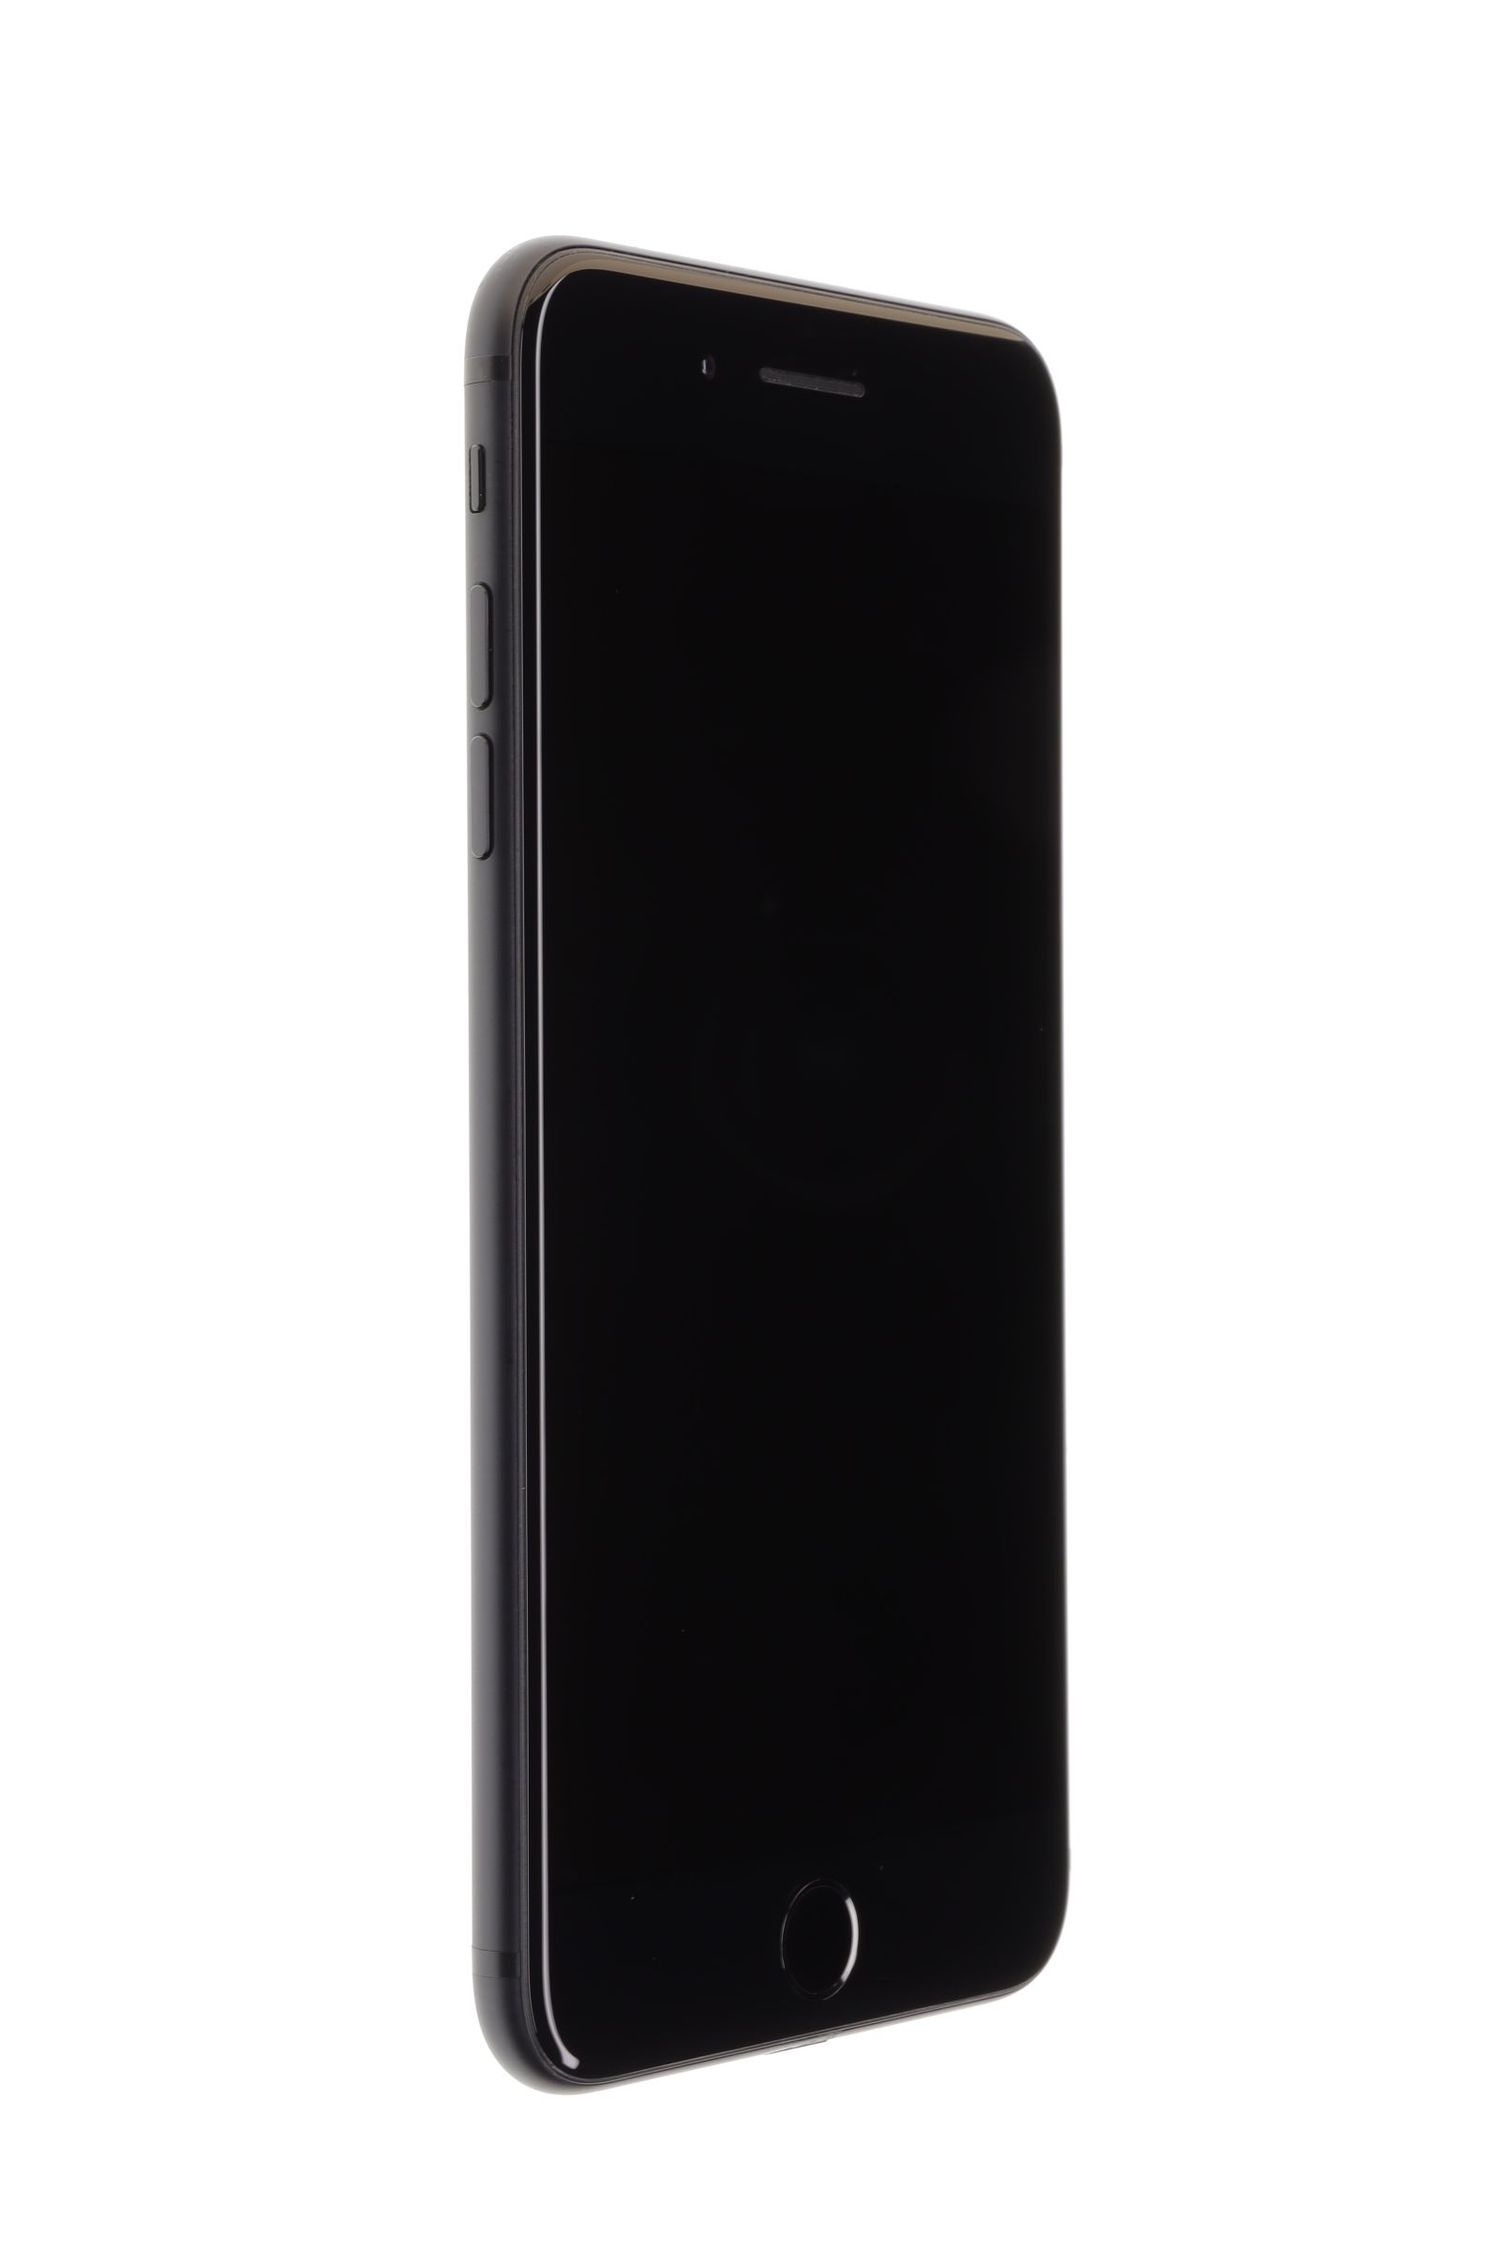 Κινητό τηλέφωνο Apple iPhone 7 Plus, Black, 32 GB, Excelent